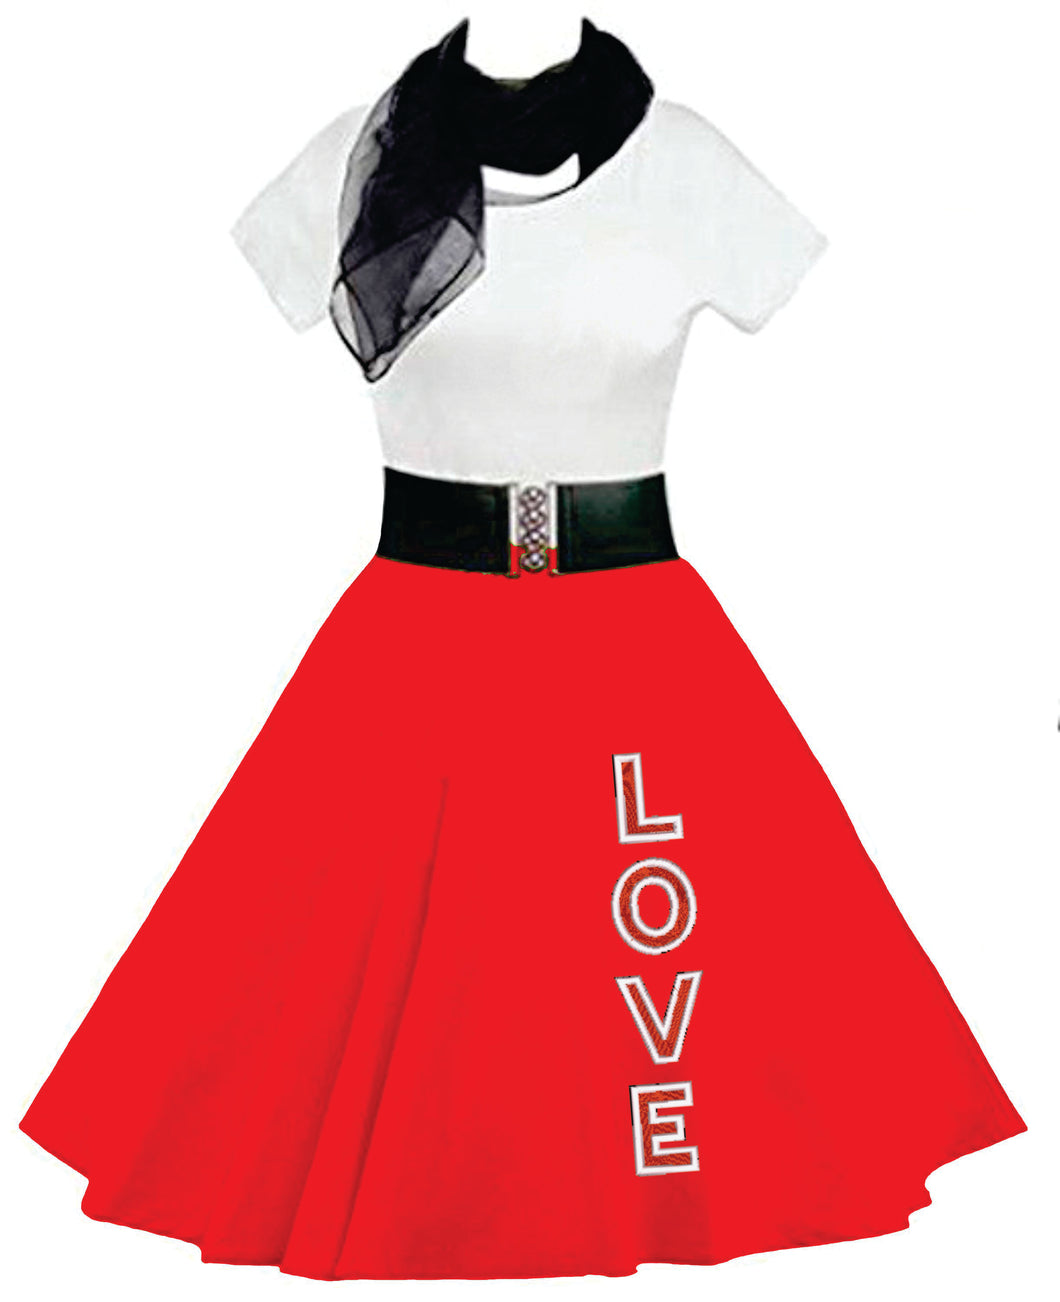 Love Skirt